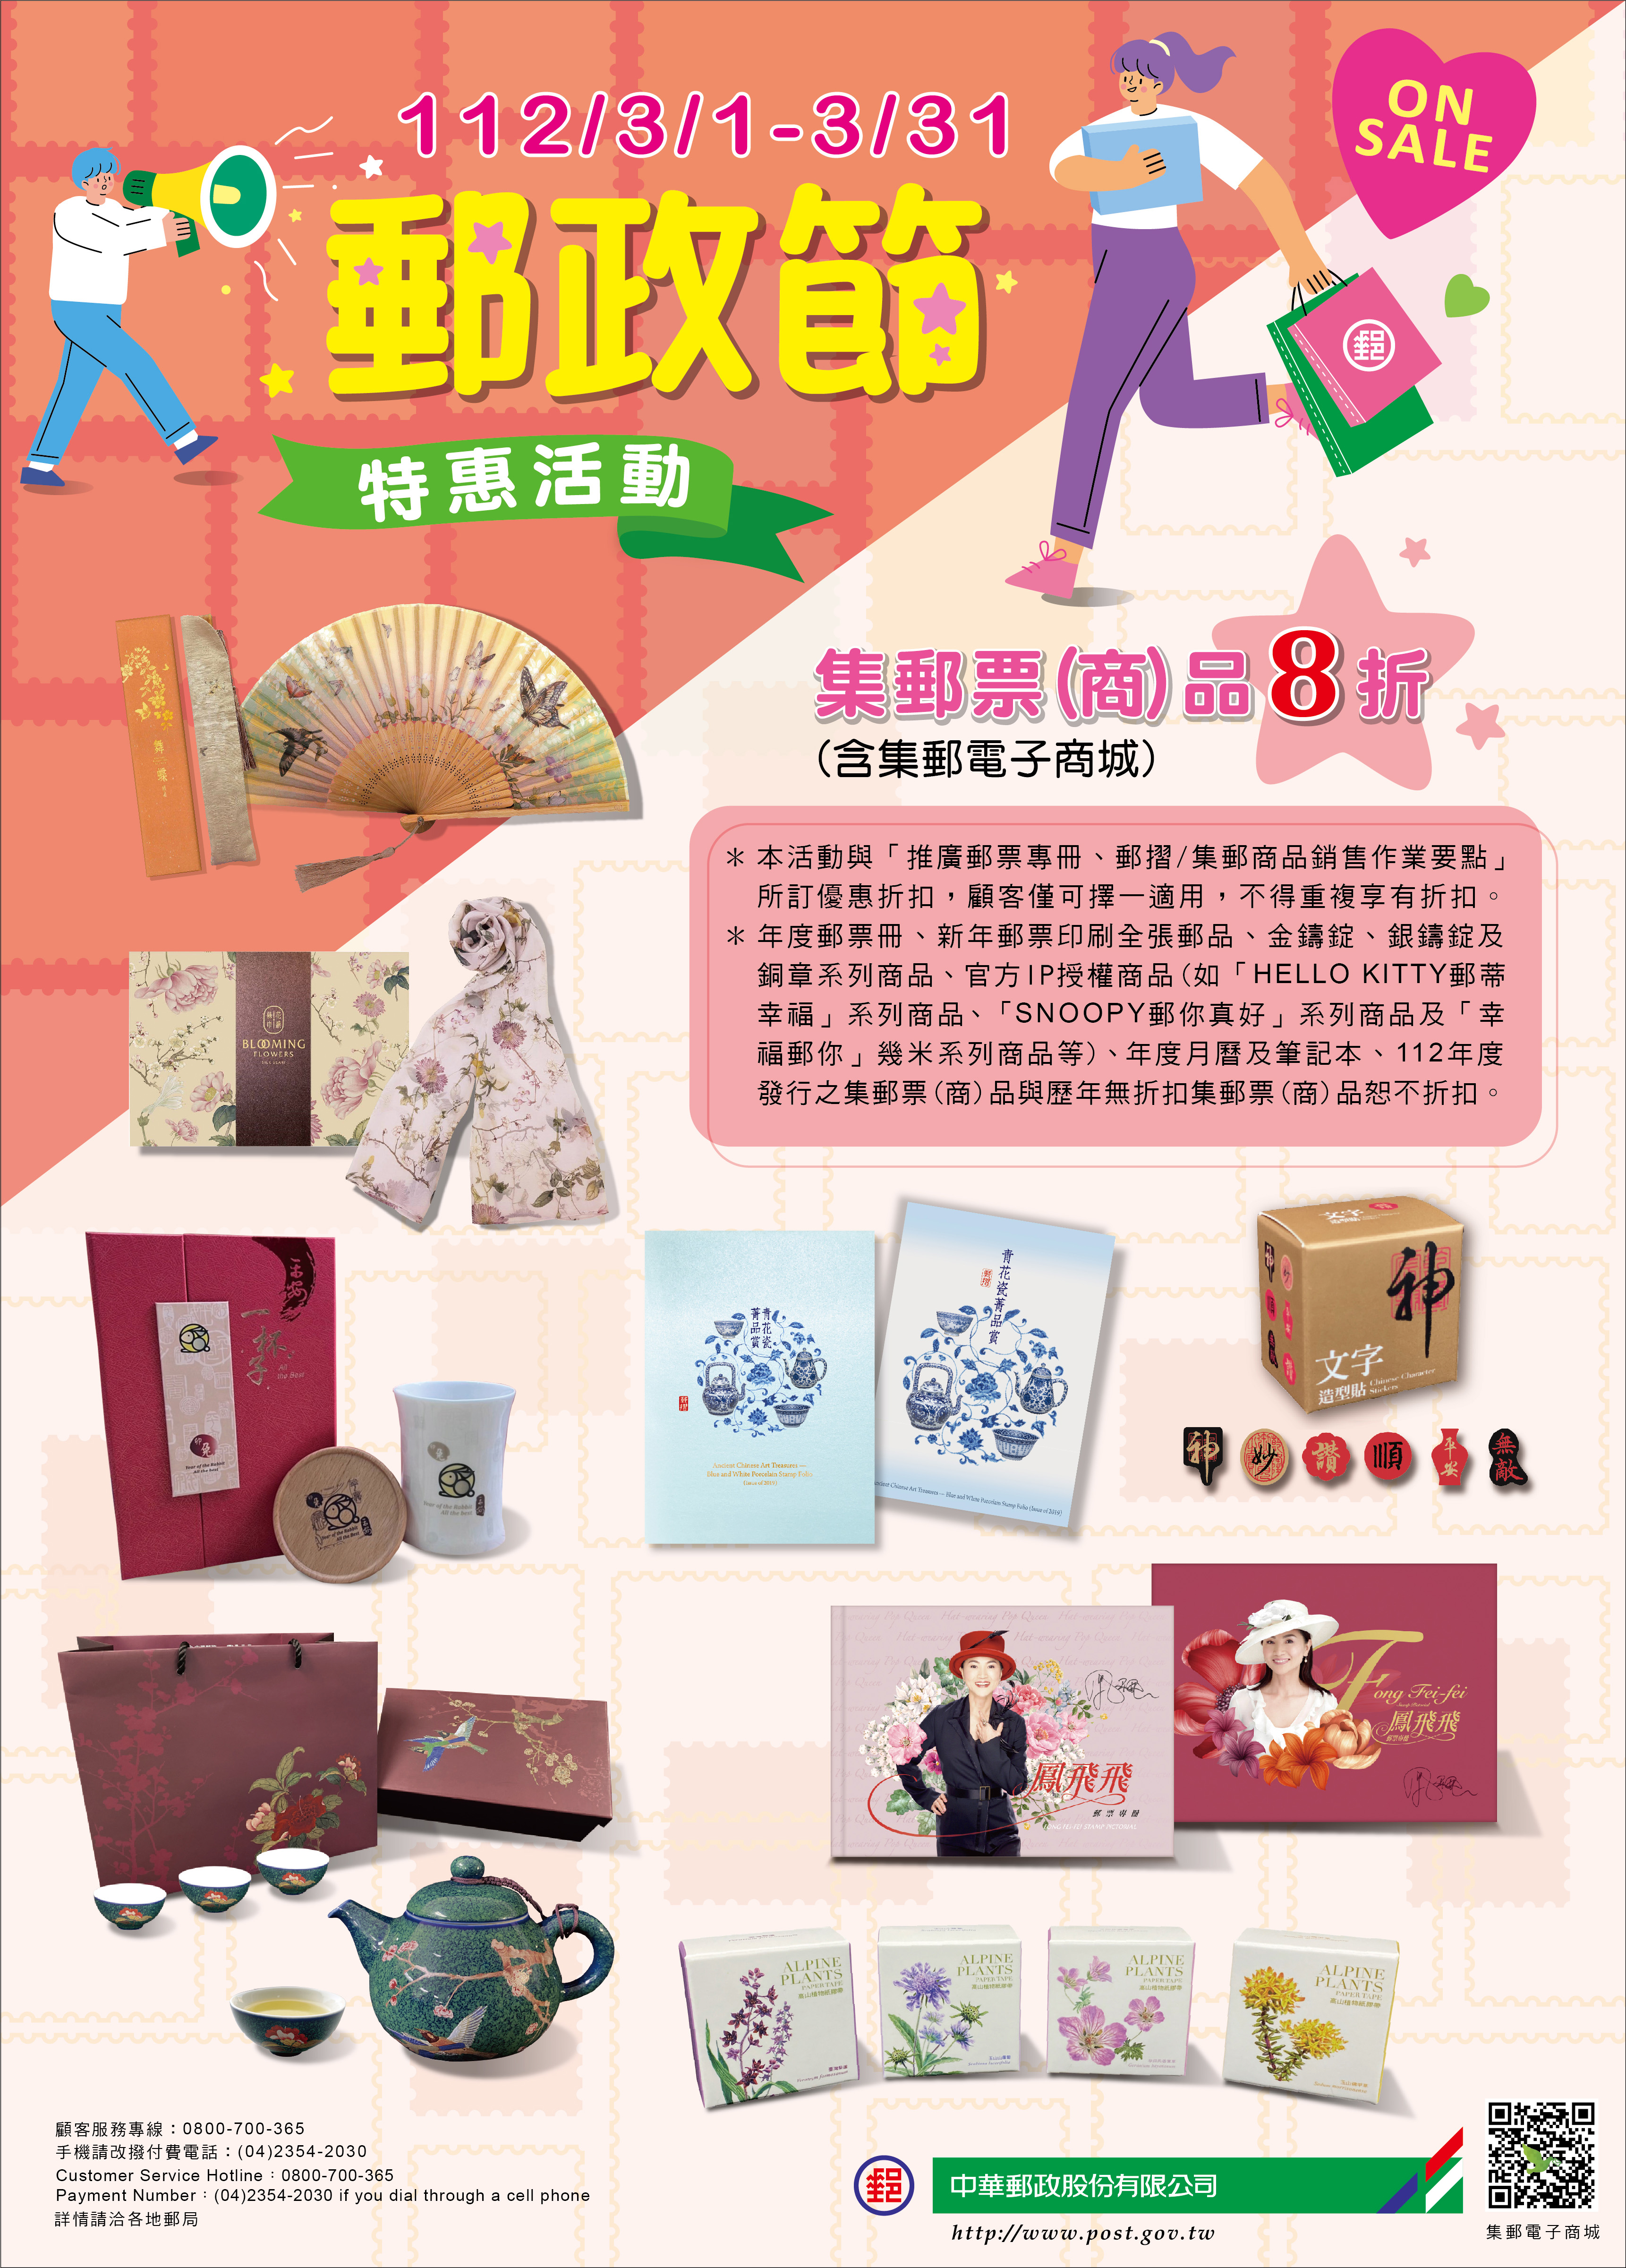 歡慶郵政節 推出集郵票(商)品優惠活動